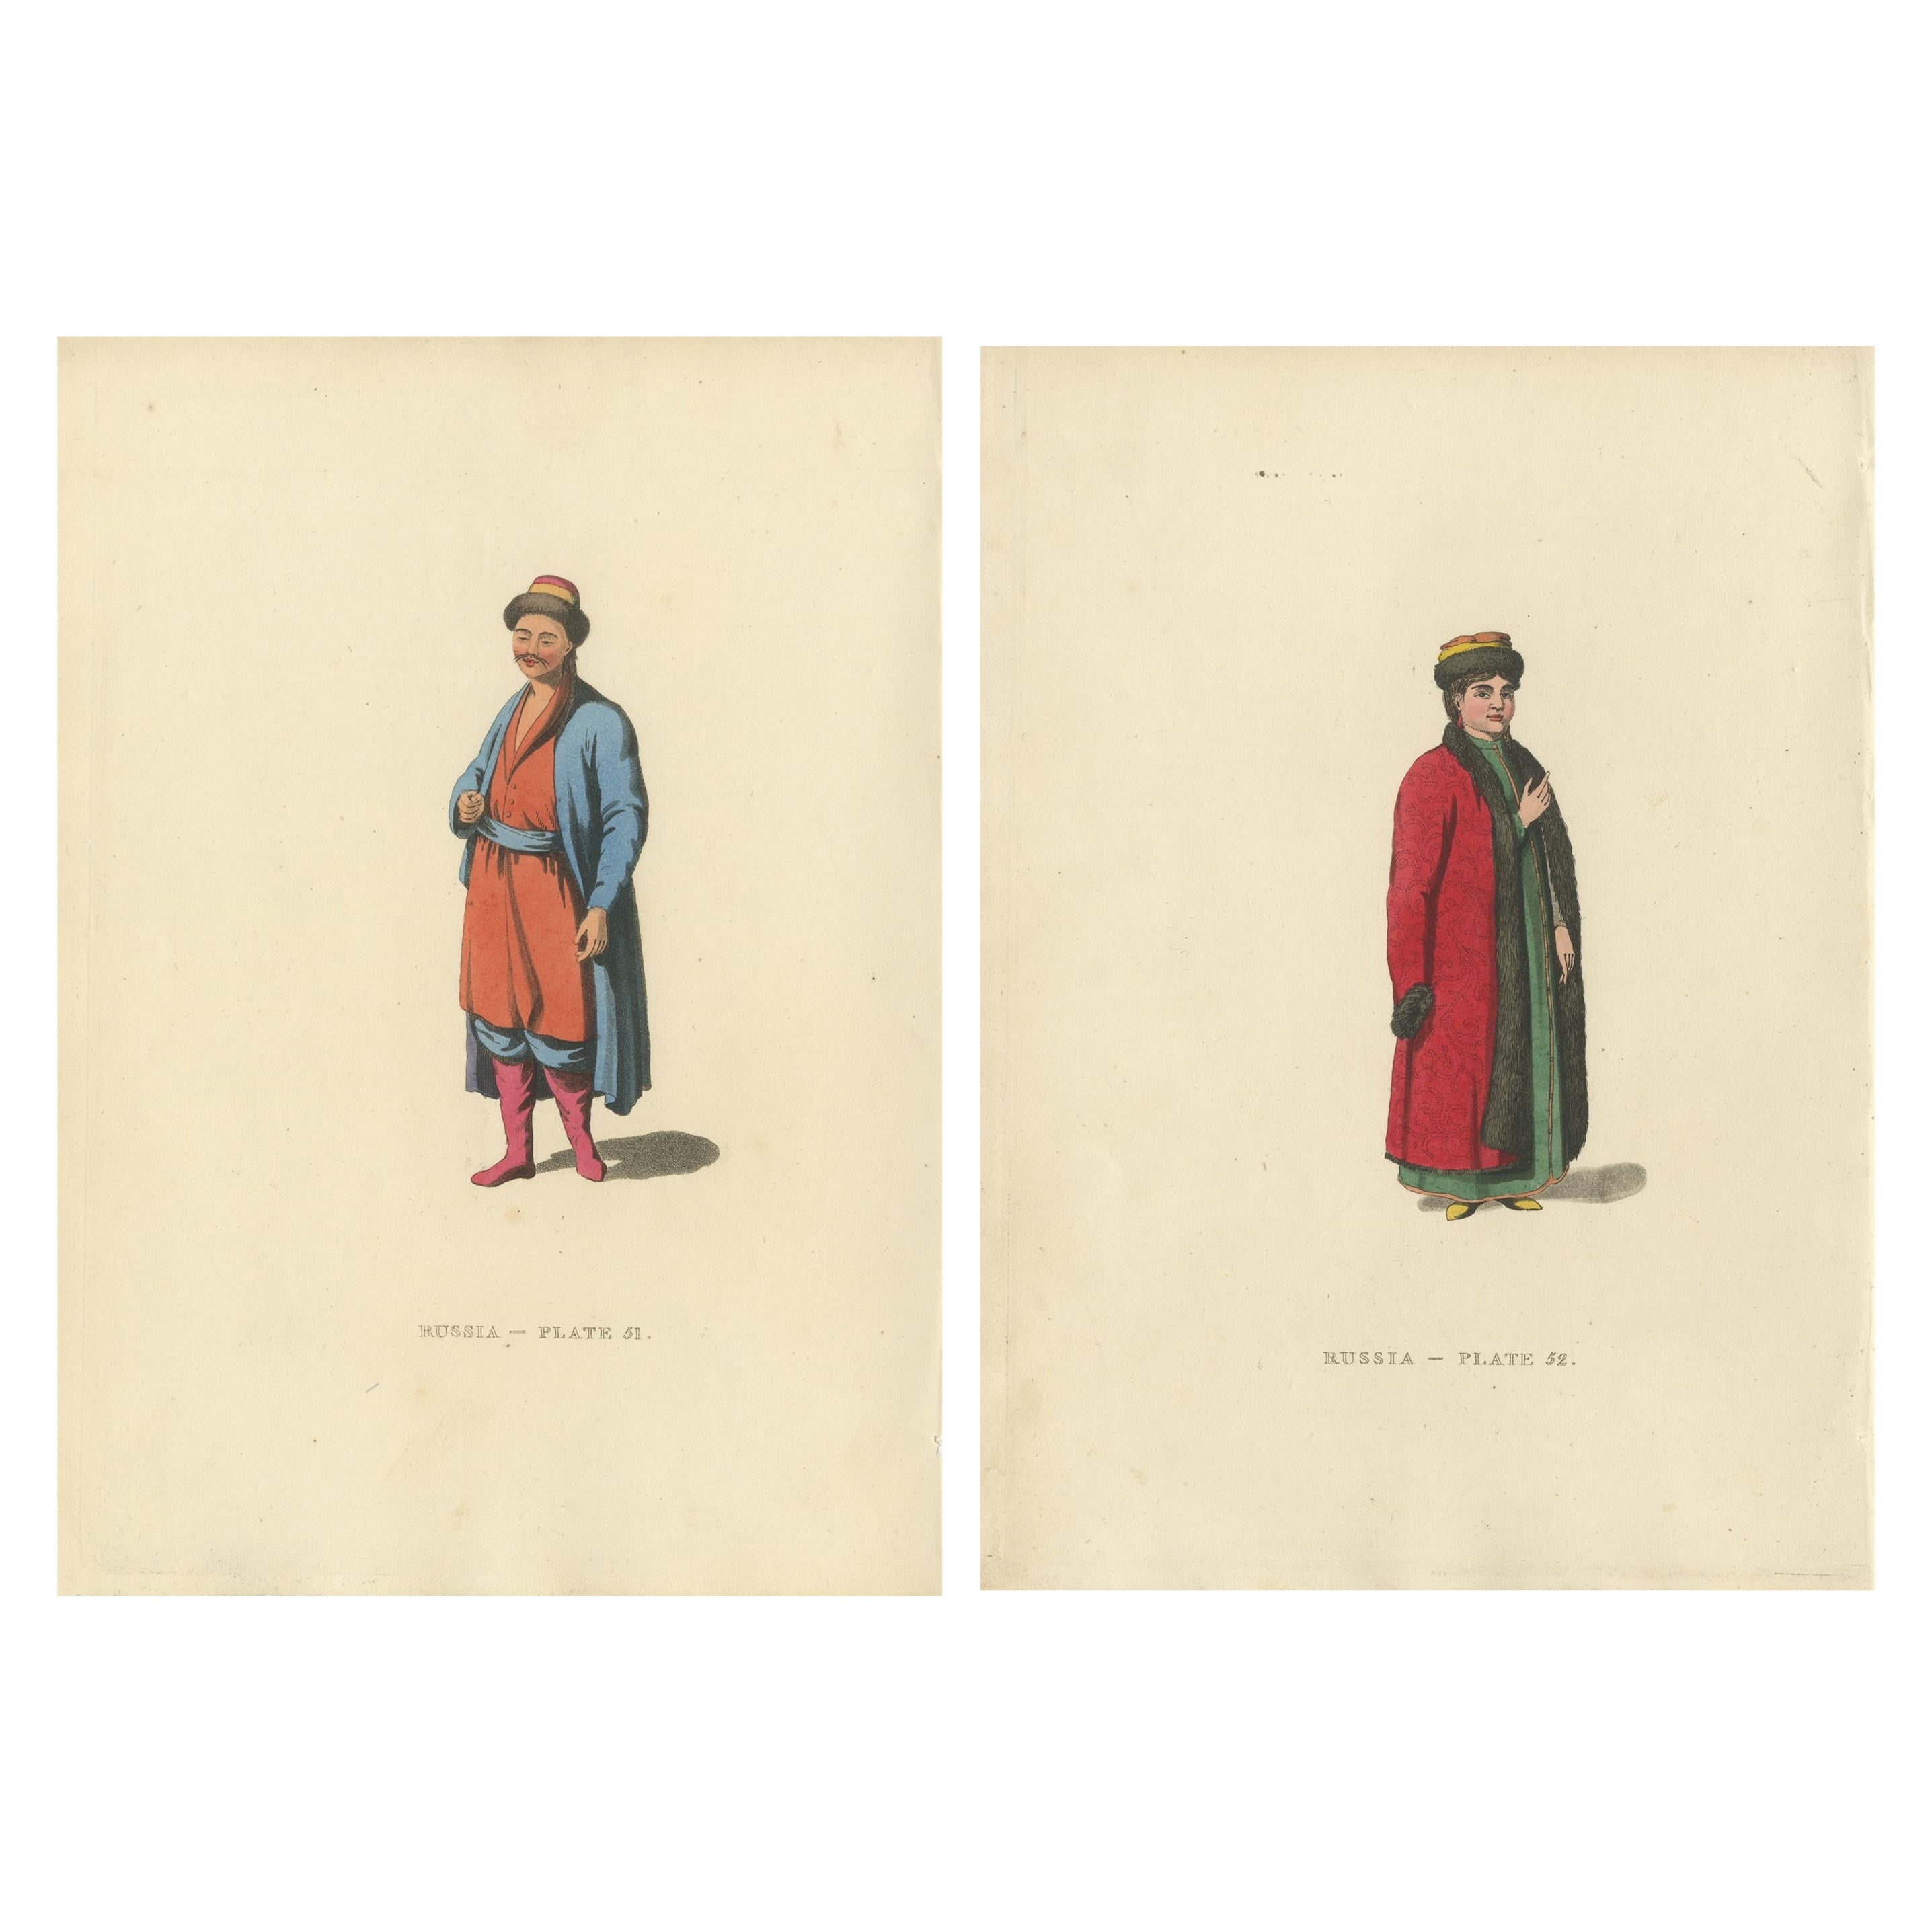 Un aperçu de la culture Kalmyk à travers les gravures de William Alexander de 1814